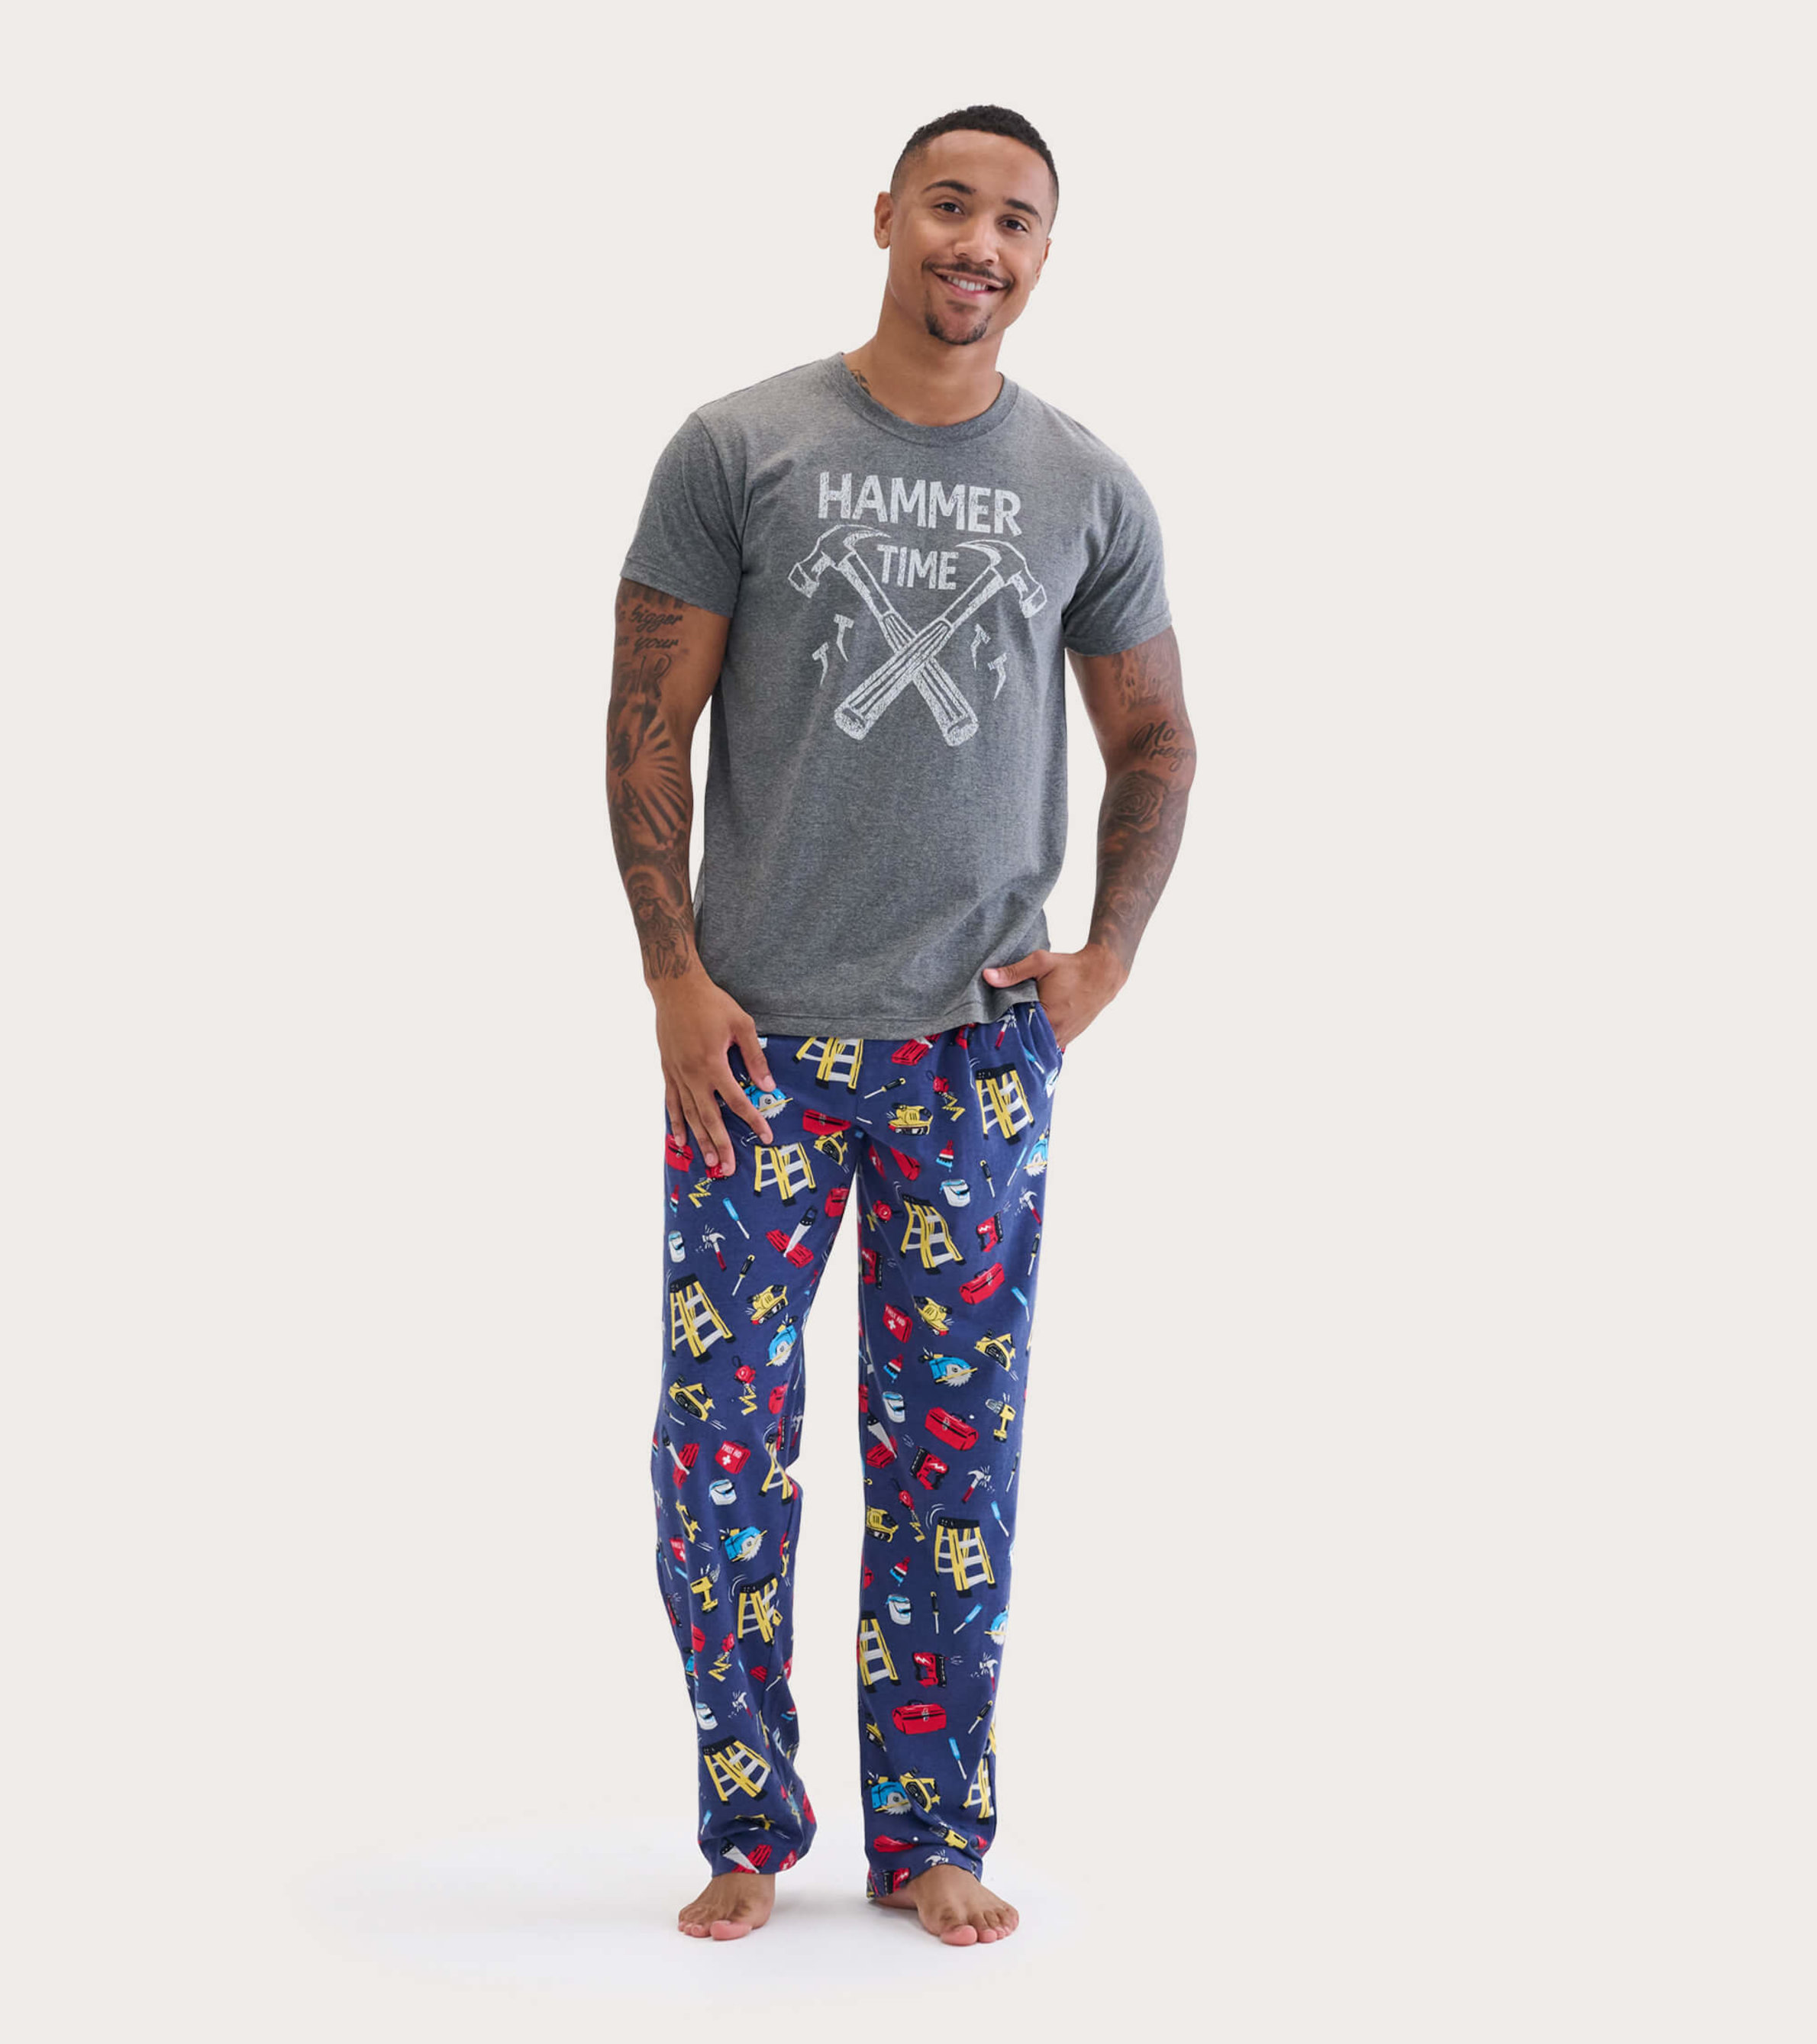 Jersey Pajamas